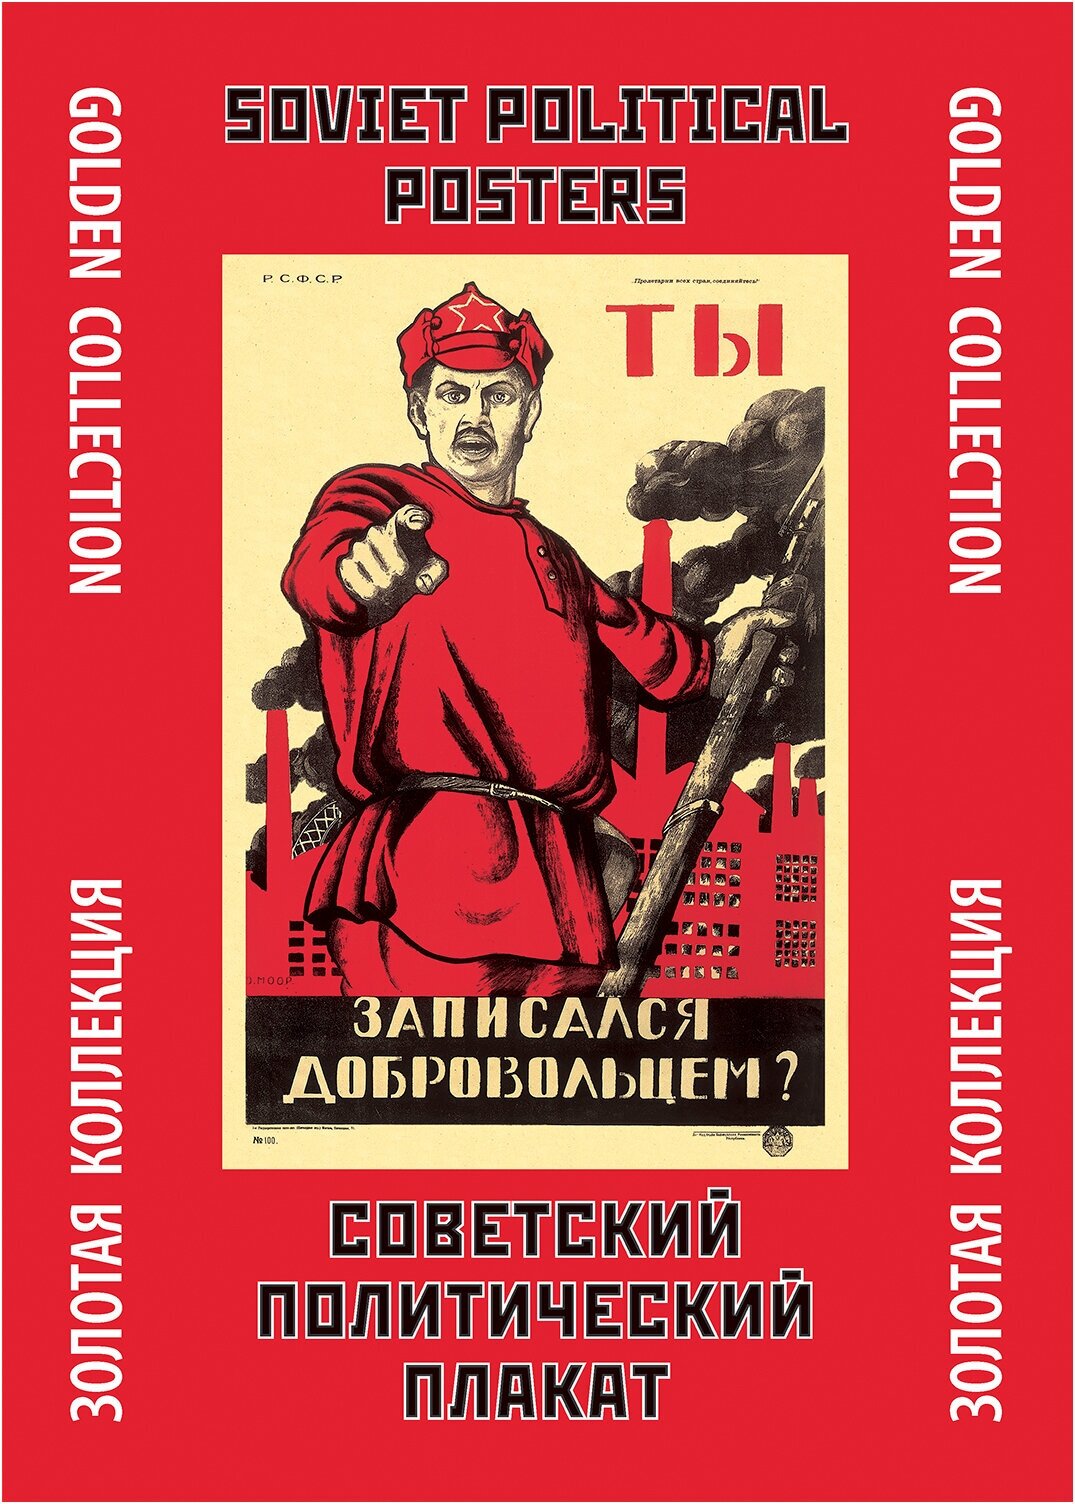 Тематическая папка Советский политический плакат/Soviet Political Posters. Golden Collection